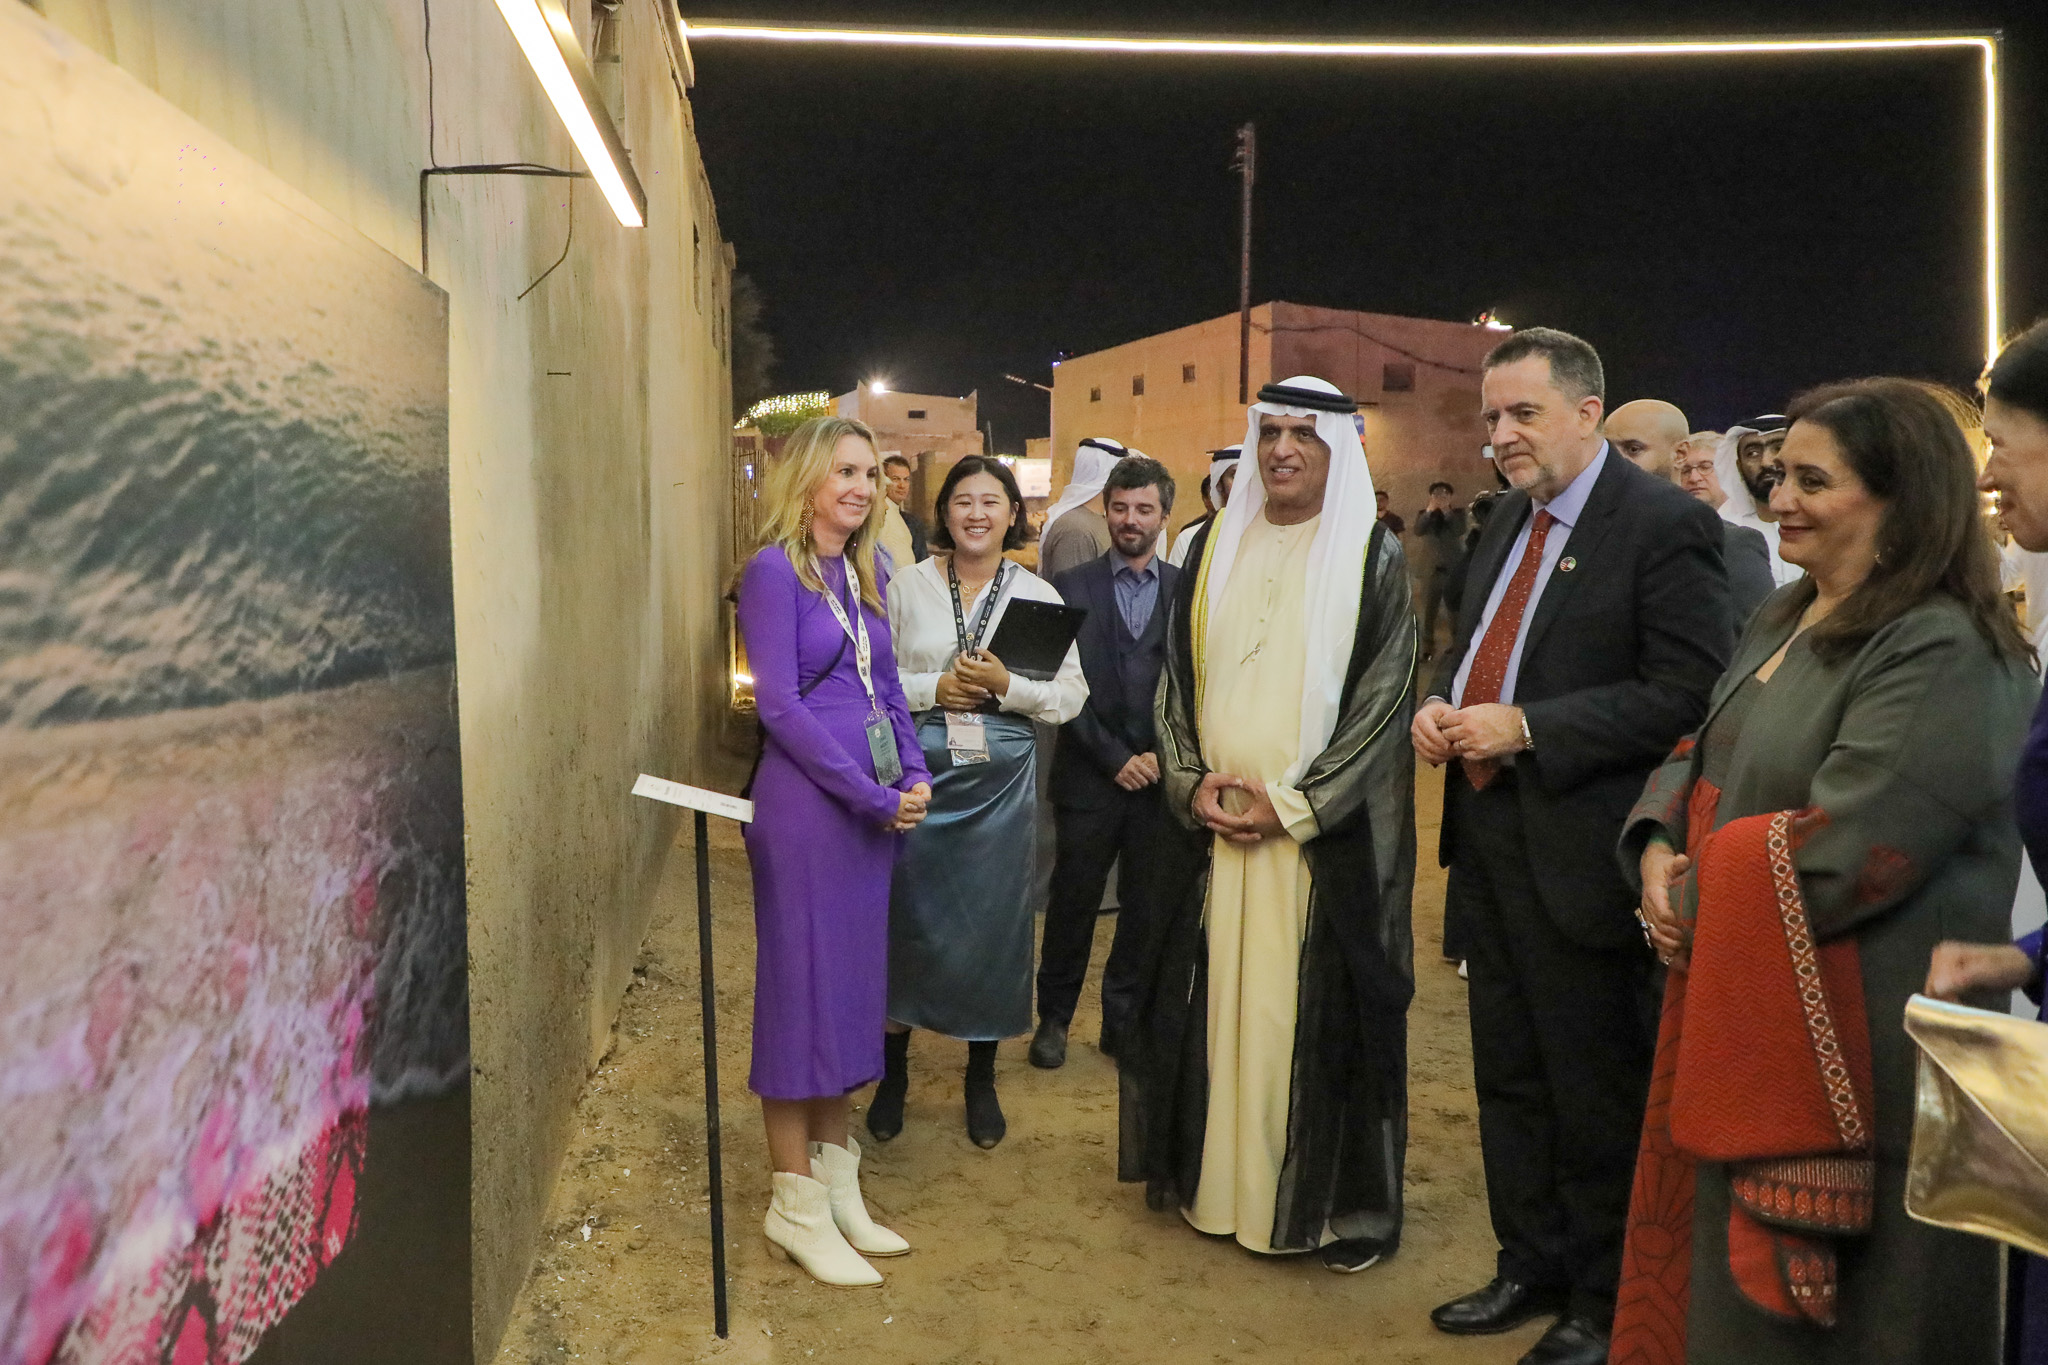 سعود بن صقر يشهد انطلاق فعاليات النسخة الـ 11 لـ "مهرجان رأس الخيمة للفنون البصري"